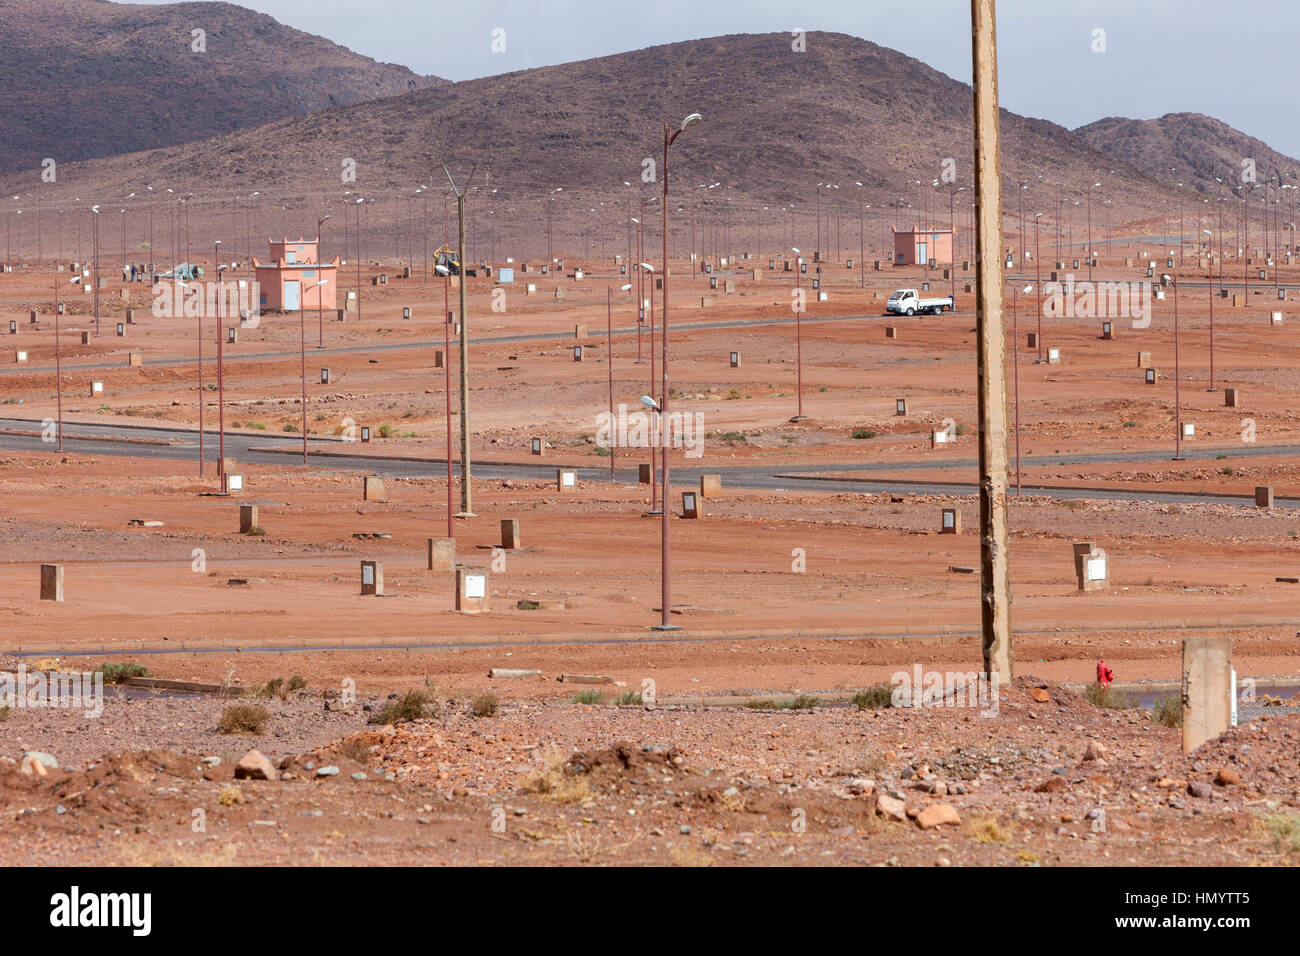 Ouarzazate, Marruecos. La planificación para el futuro desarrollo urbano. Foto de stock